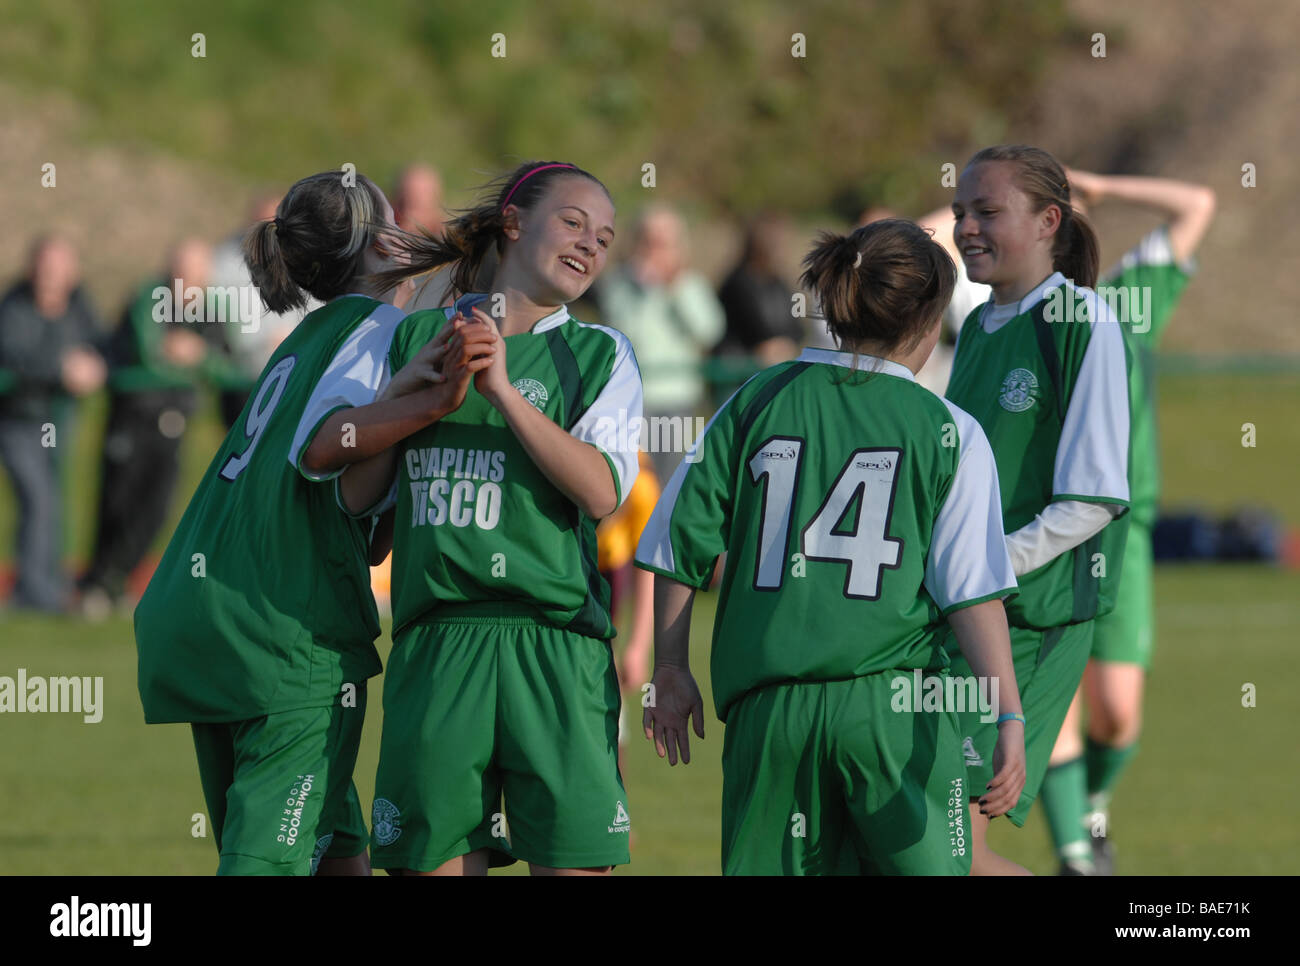 Jóvenes de fútbol fútbol femenino concurso de deportes de acción coincide con partido de fútbol abordar Abordar disparar Foto de stock